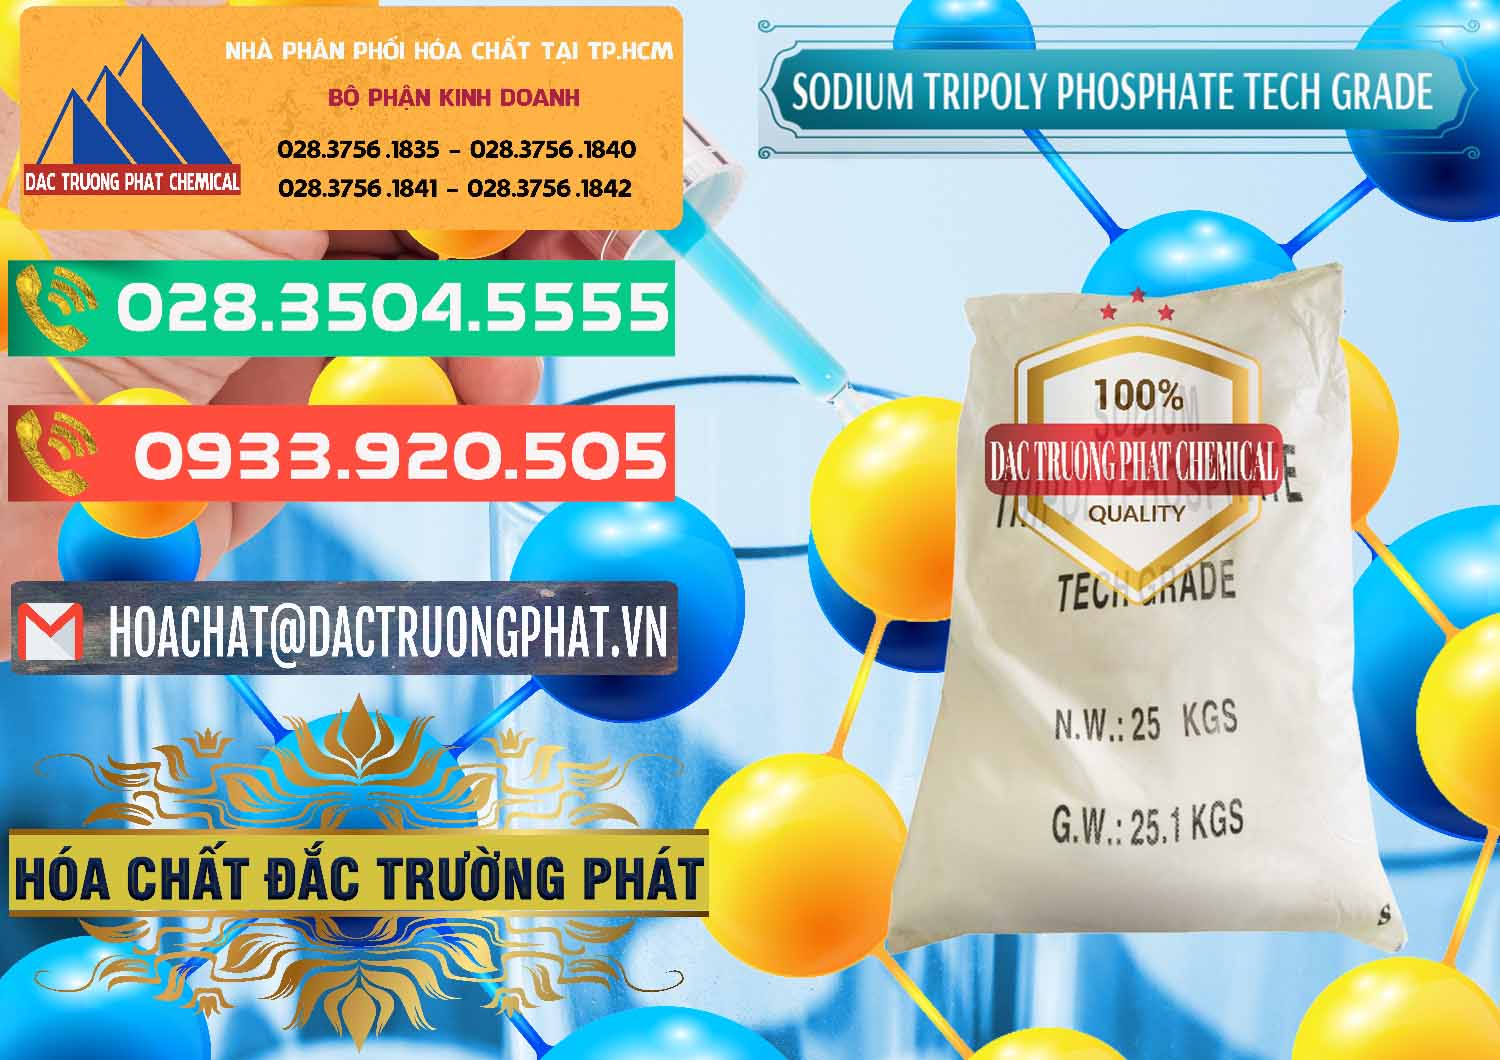 Cung cấp ( bán ) Sodium Tripoly Phosphate - STPP Tech Grade Trung Quốc China - 0453 - Nhà phân phối ( nhập khẩu ) hóa chất tại TP.HCM - congtyhoachat.com.vn